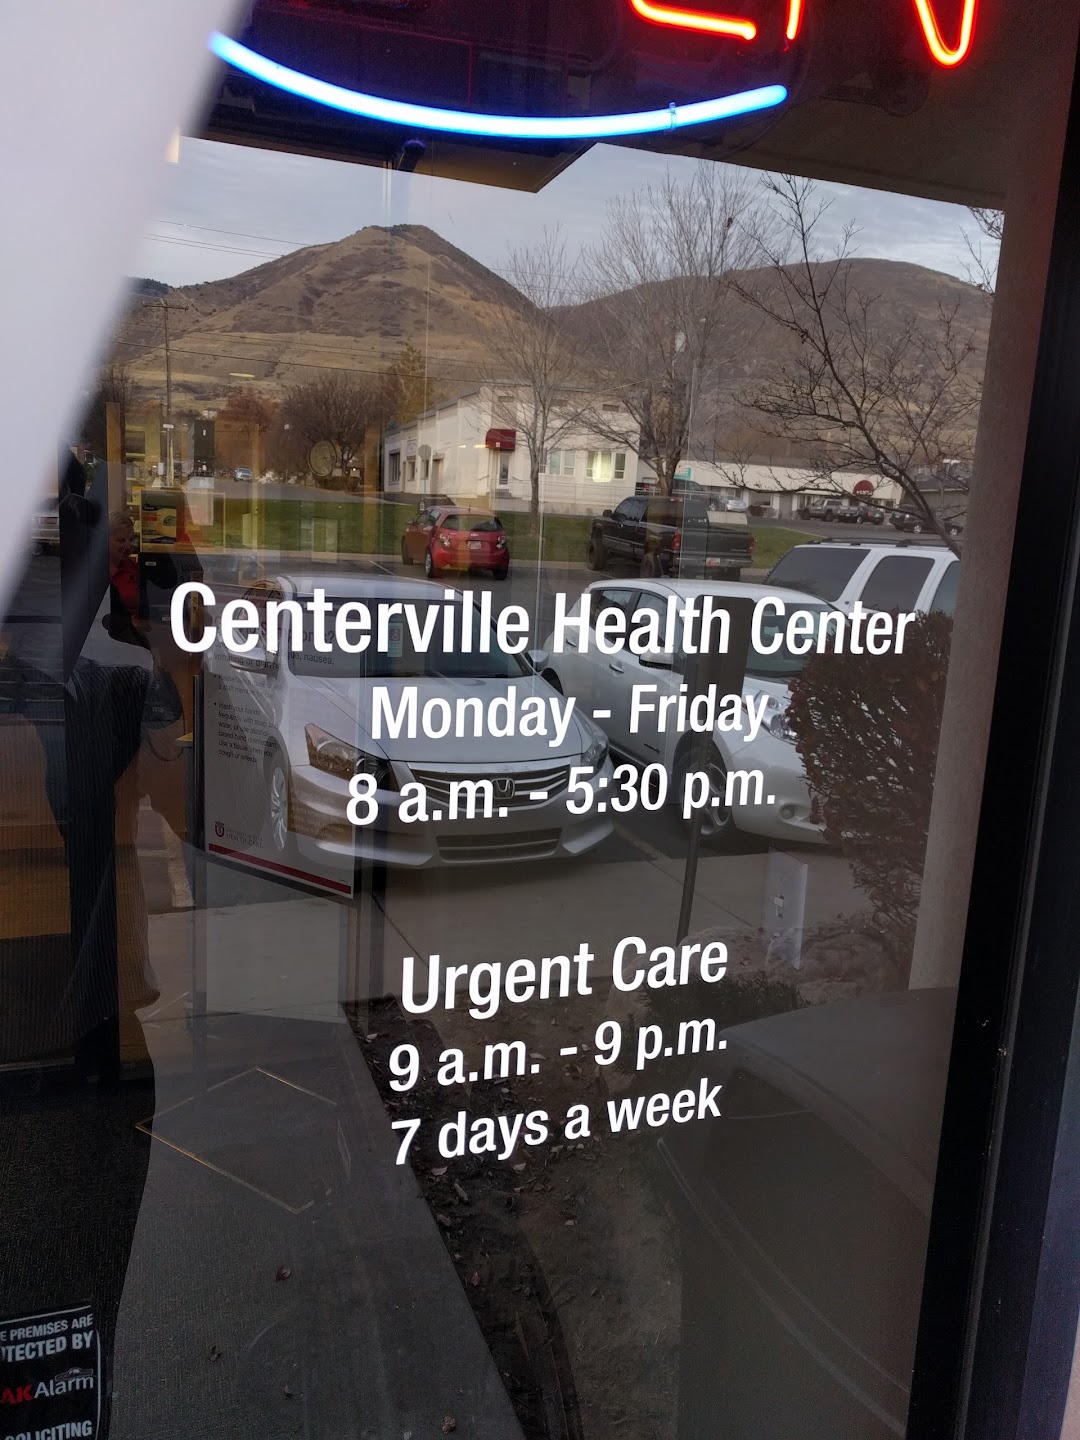 U of U Health Centerville Health Center